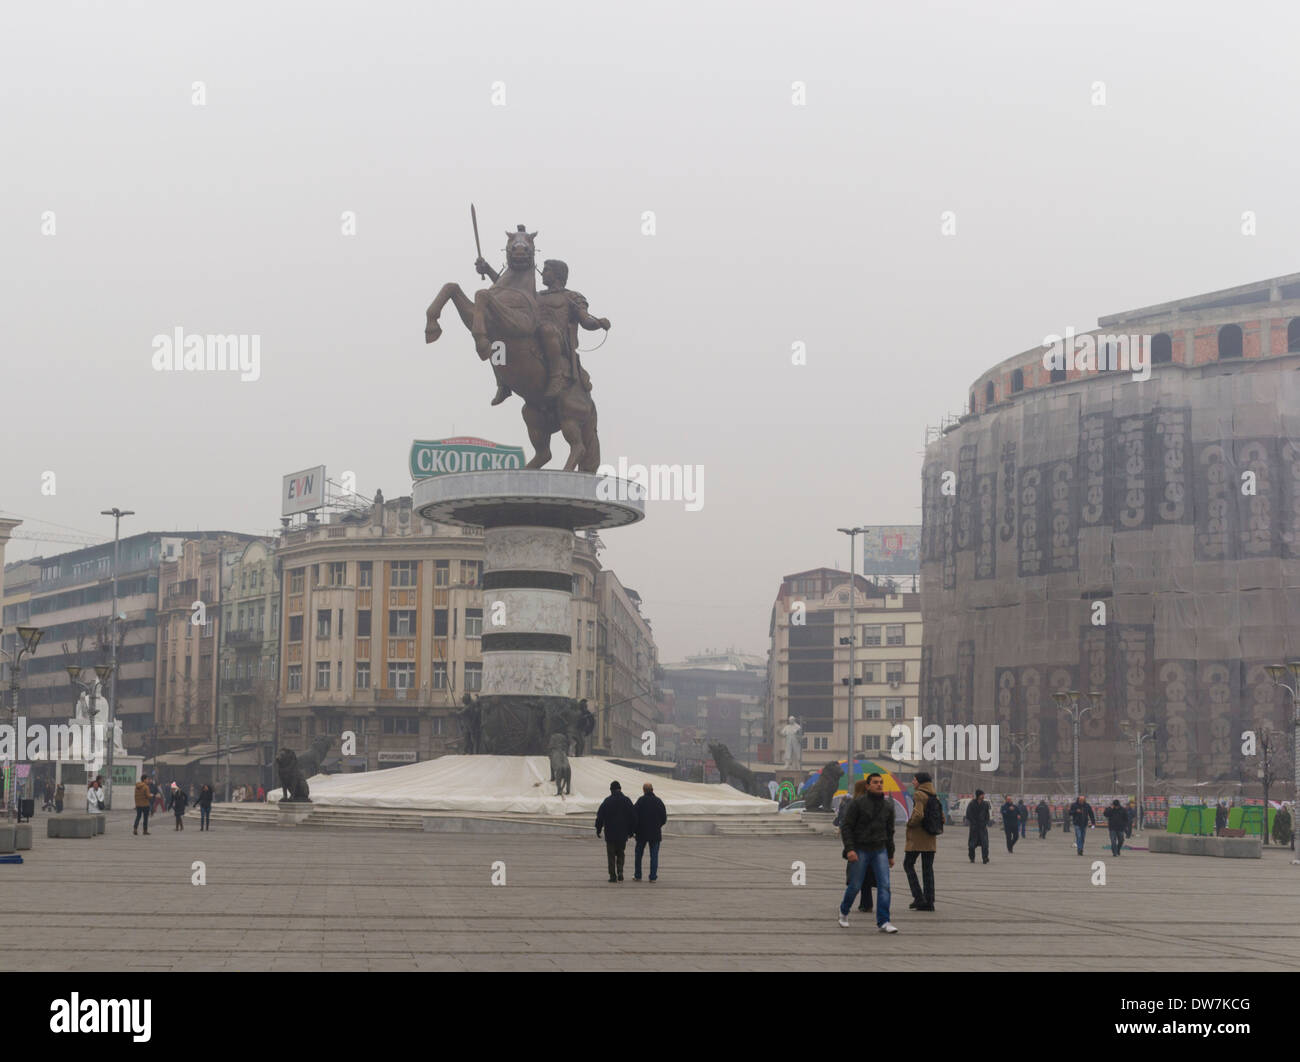 Guerrier sur un cheval, statue d'Alexandre le Grand de Skopje, Macédoine (ARYM) Banque D'Images